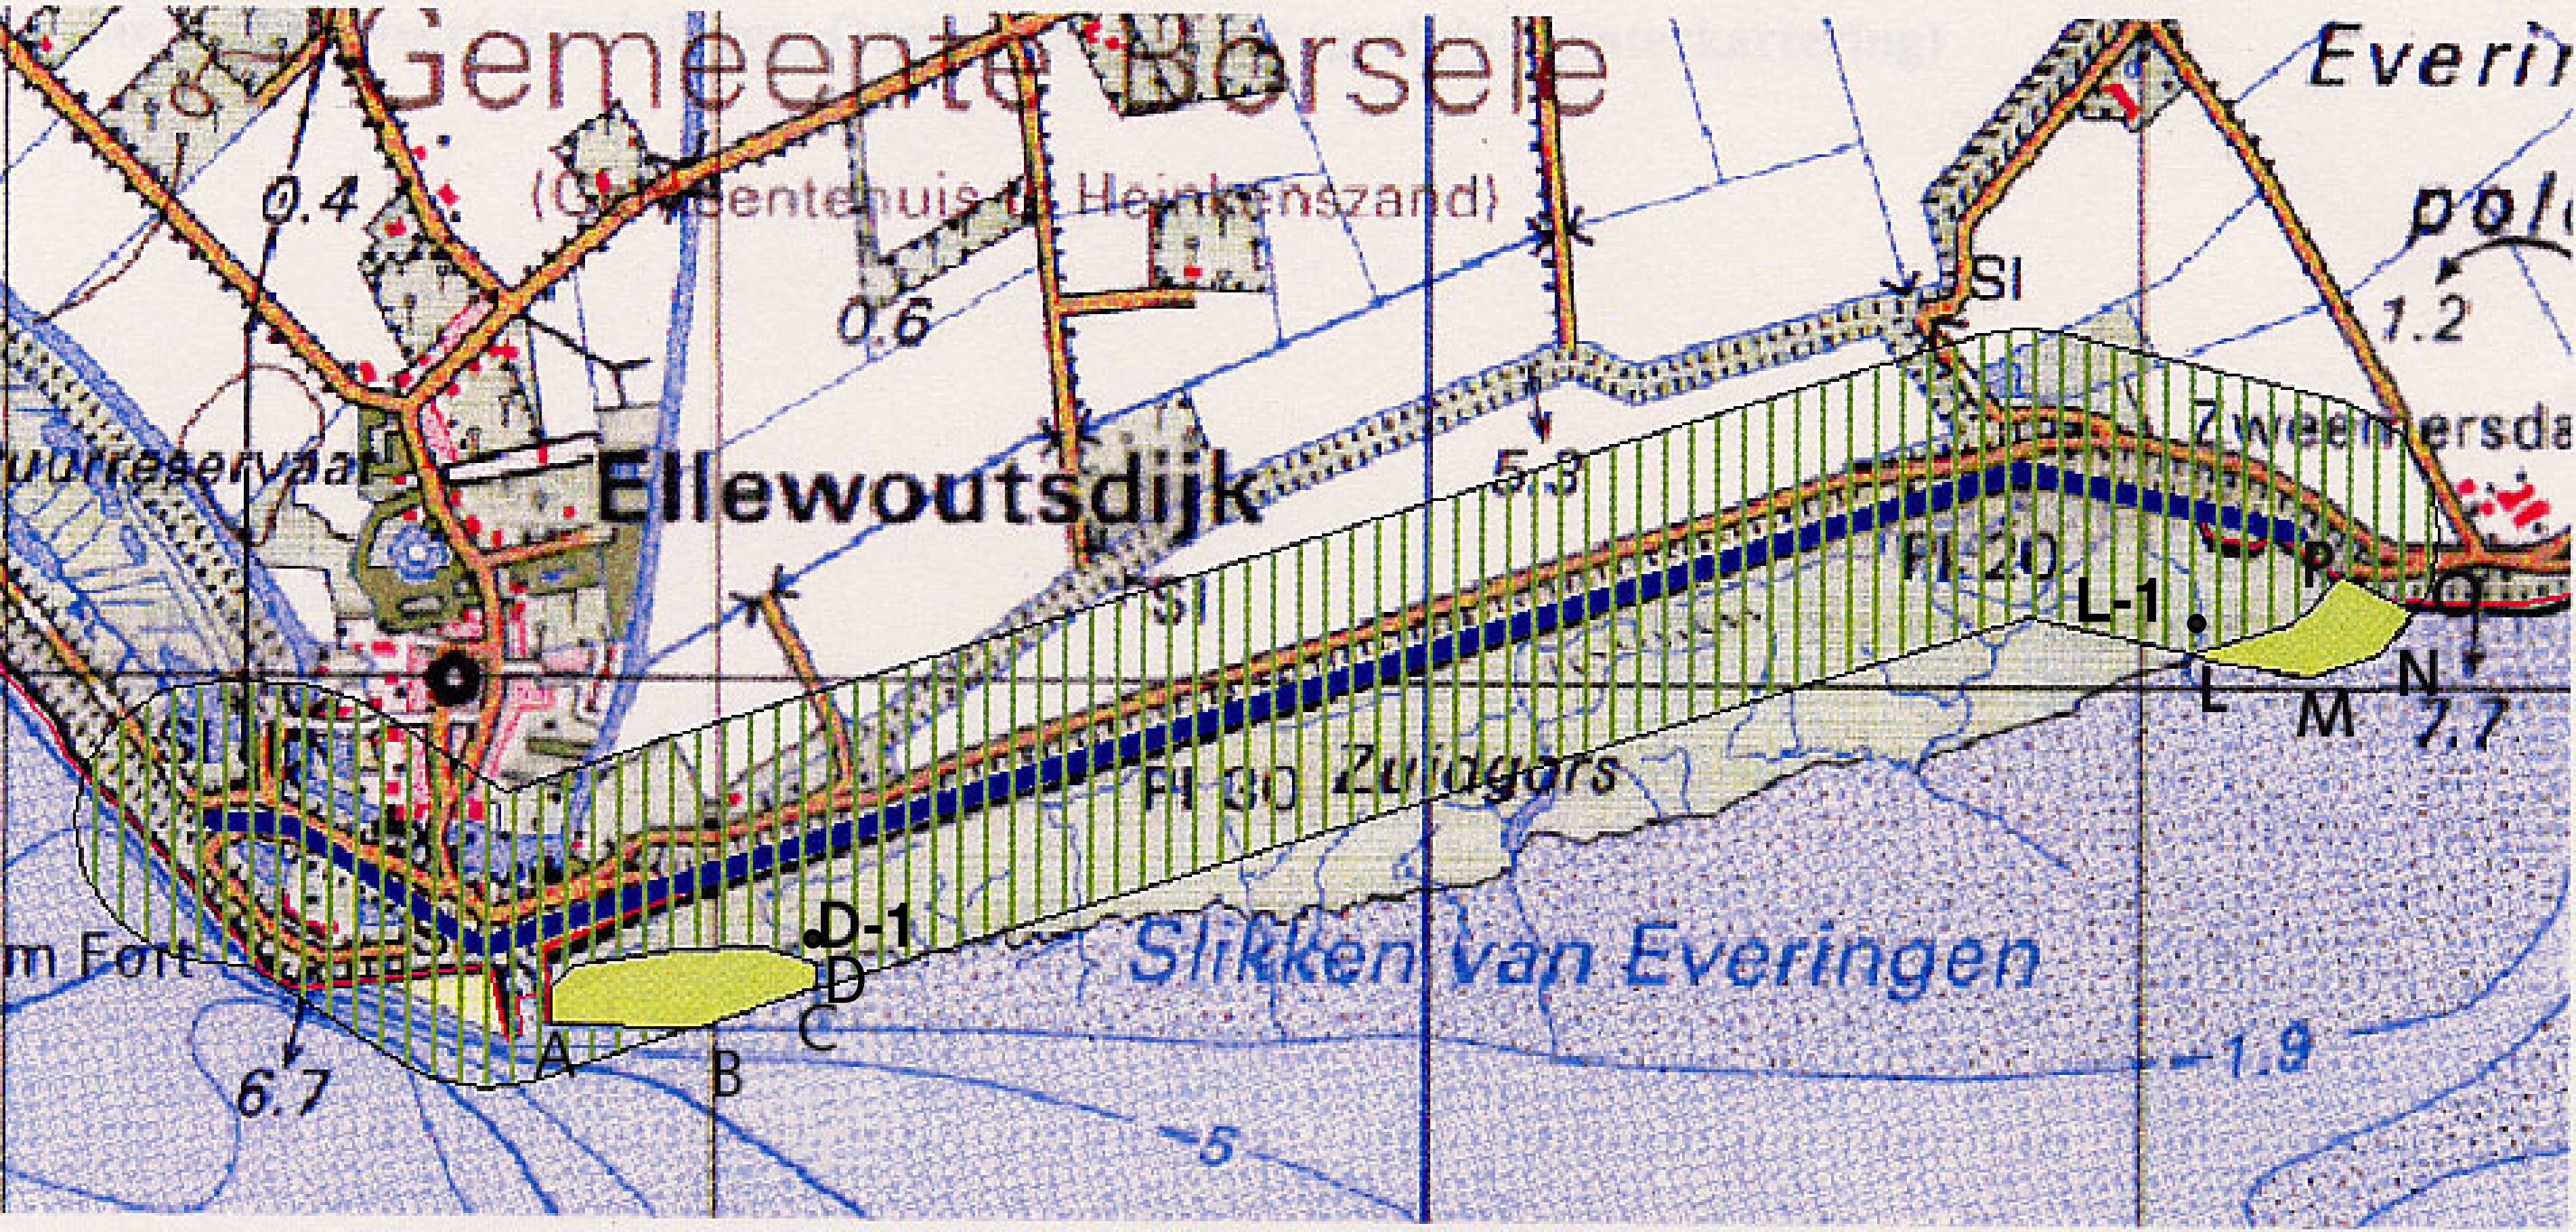 2 Materiaal en methoden 2.1 Algemeen Het dijktraject Zuidgors ligt direct ten oosten van Ellewoutsdijk op Zuid-Beveland langs de noordelijke oever van de Westerschelde.